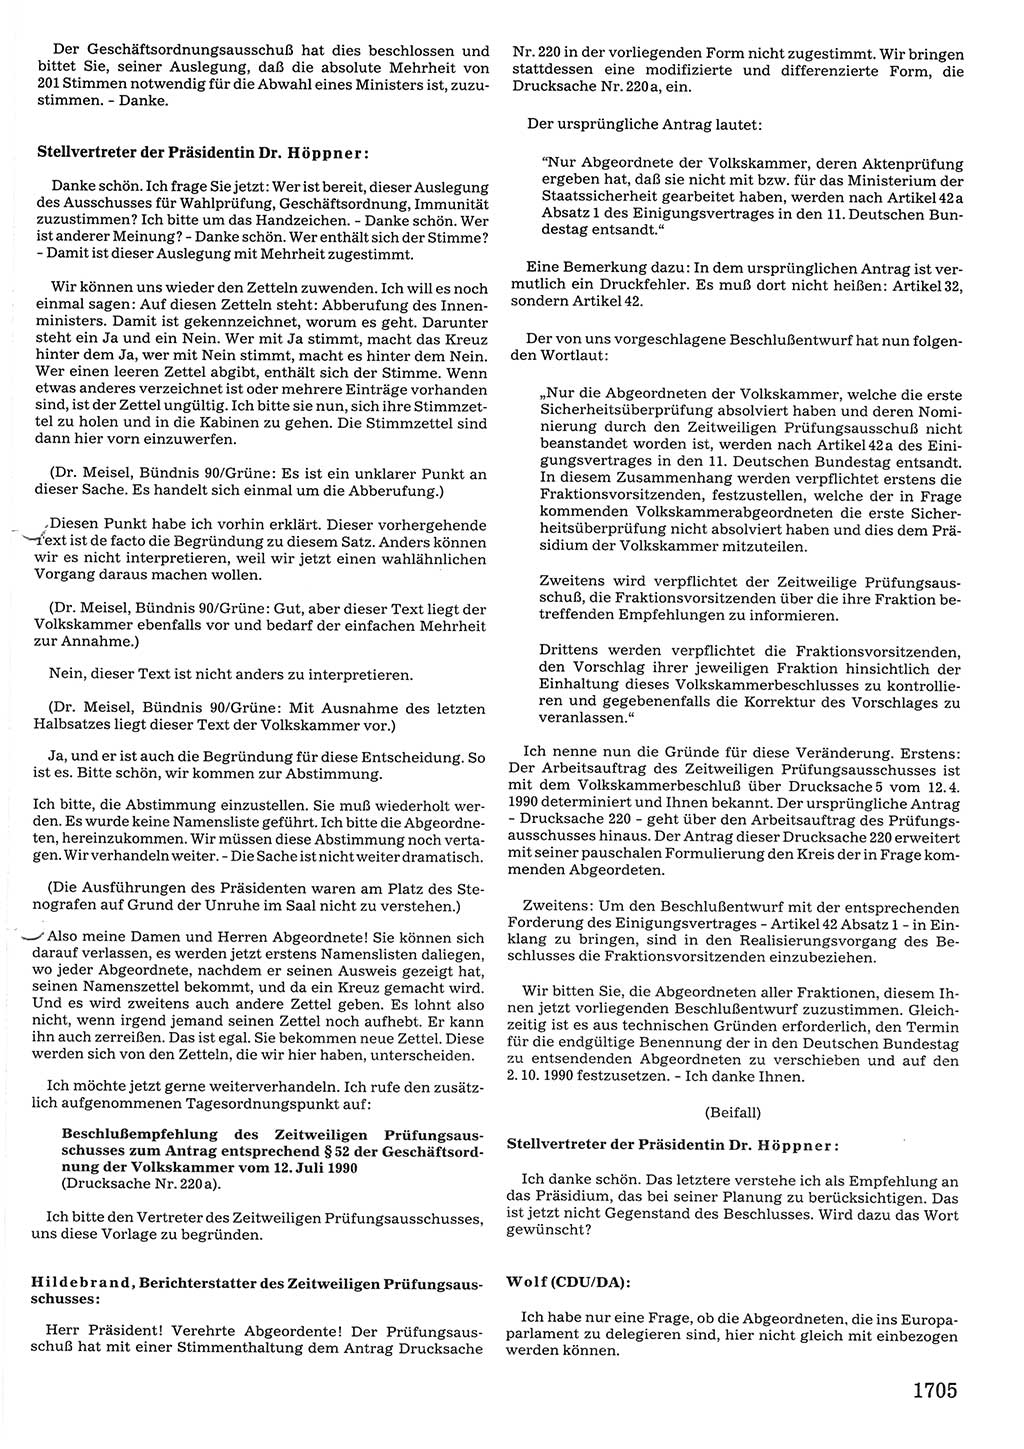 Tagungen der Volkskammer (VK) der Deutschen Demokratischen Republik (DDR), 10. Wahlperiode 1990, Seite 1705 (VK. DDR 10. WP. 1990, Prot. Tg. 1-38, 5.4.-2.10.1990, S. 1705)